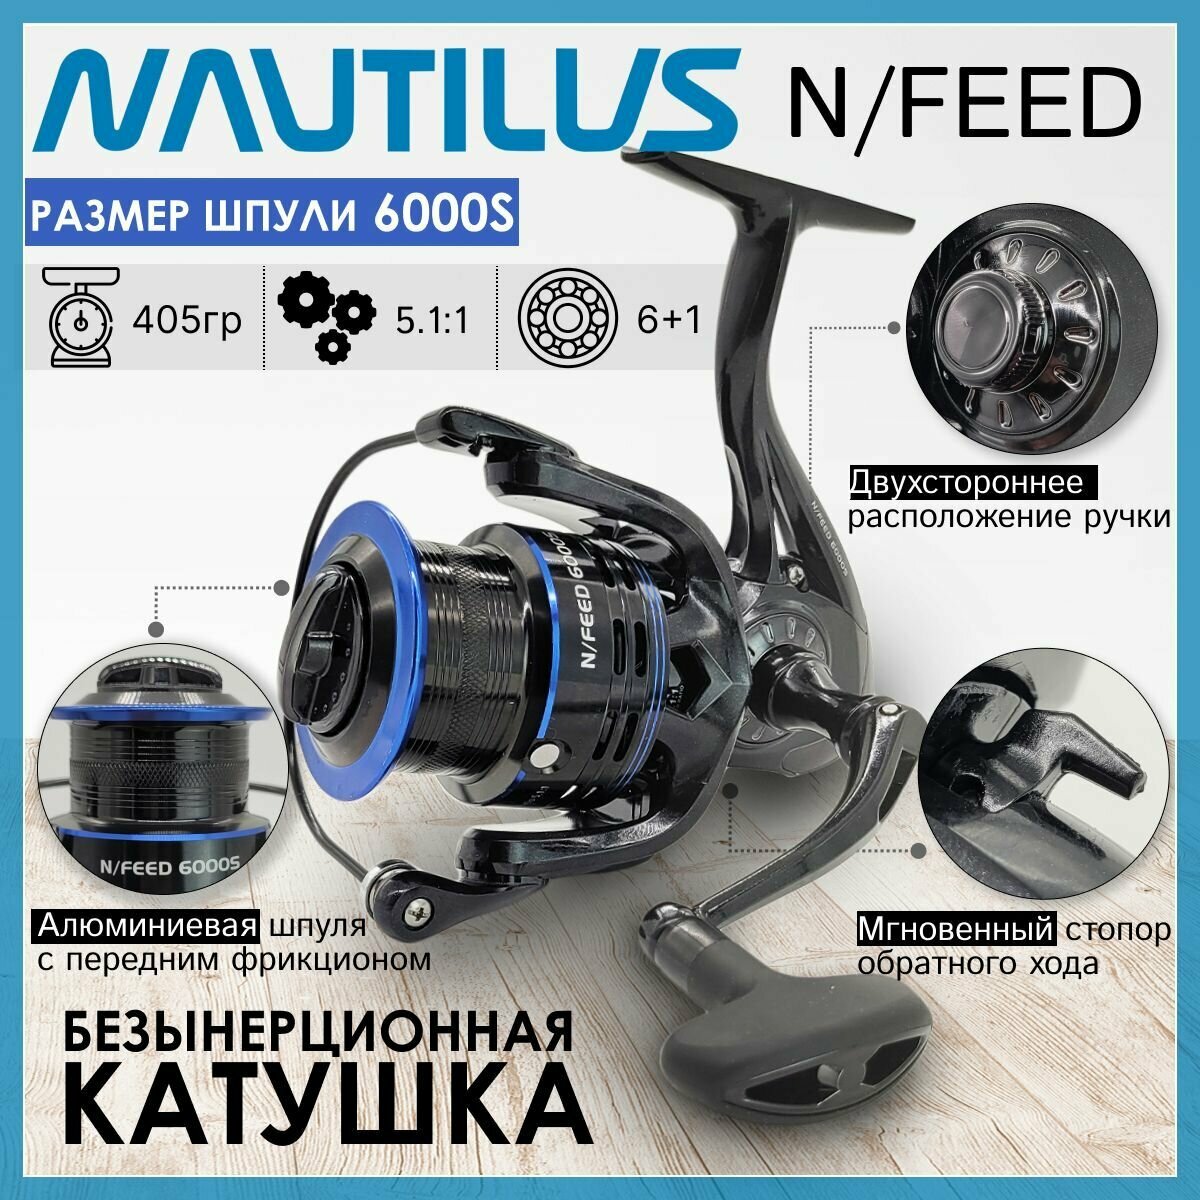 Катушка Nautilus N/FEED 6000S, с передним фрикционом